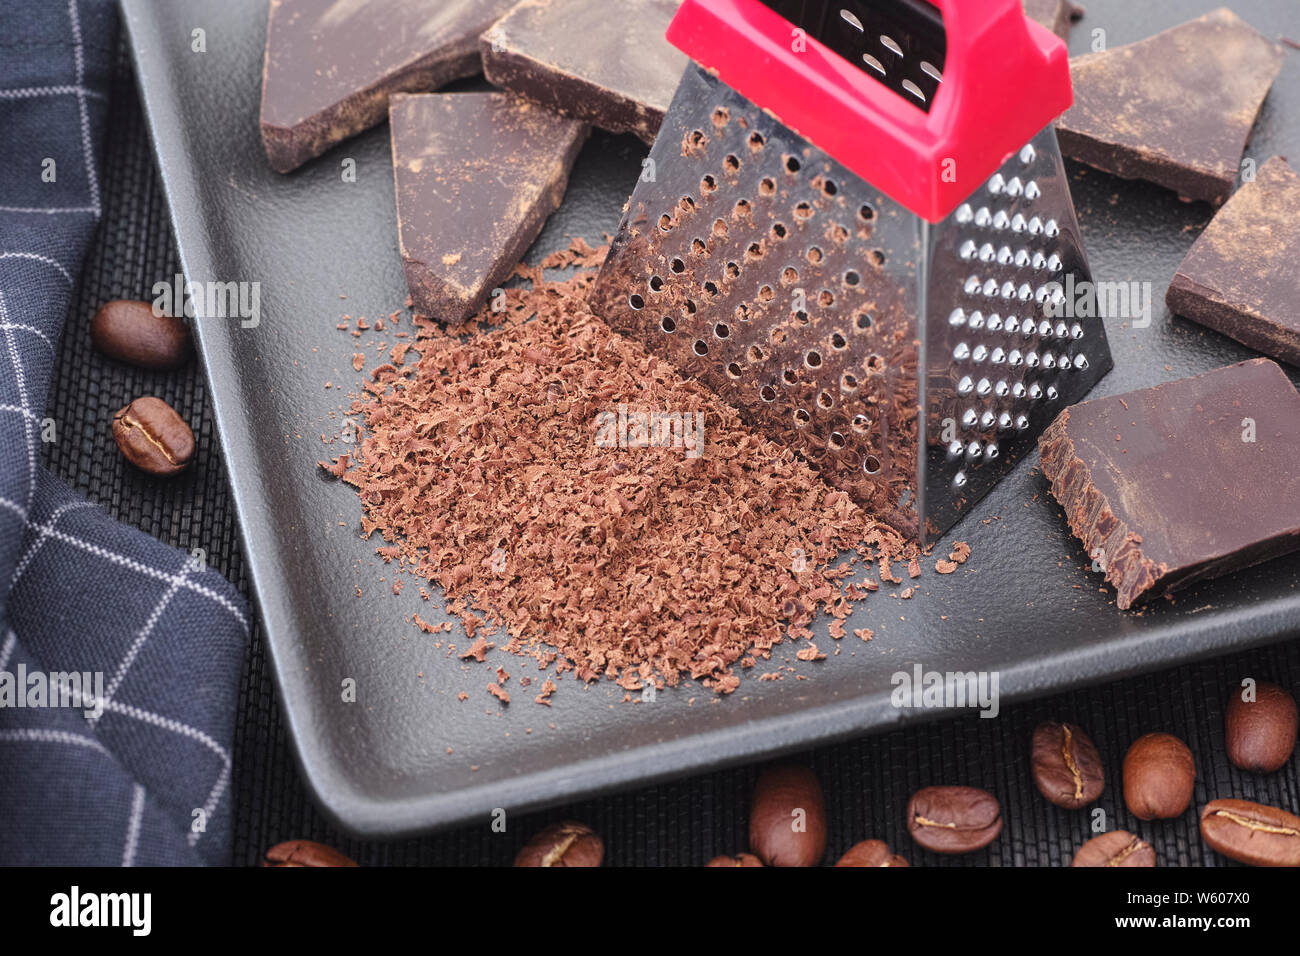 Le chocolat noir râpé et les grains de café Photo Stock - Alamy